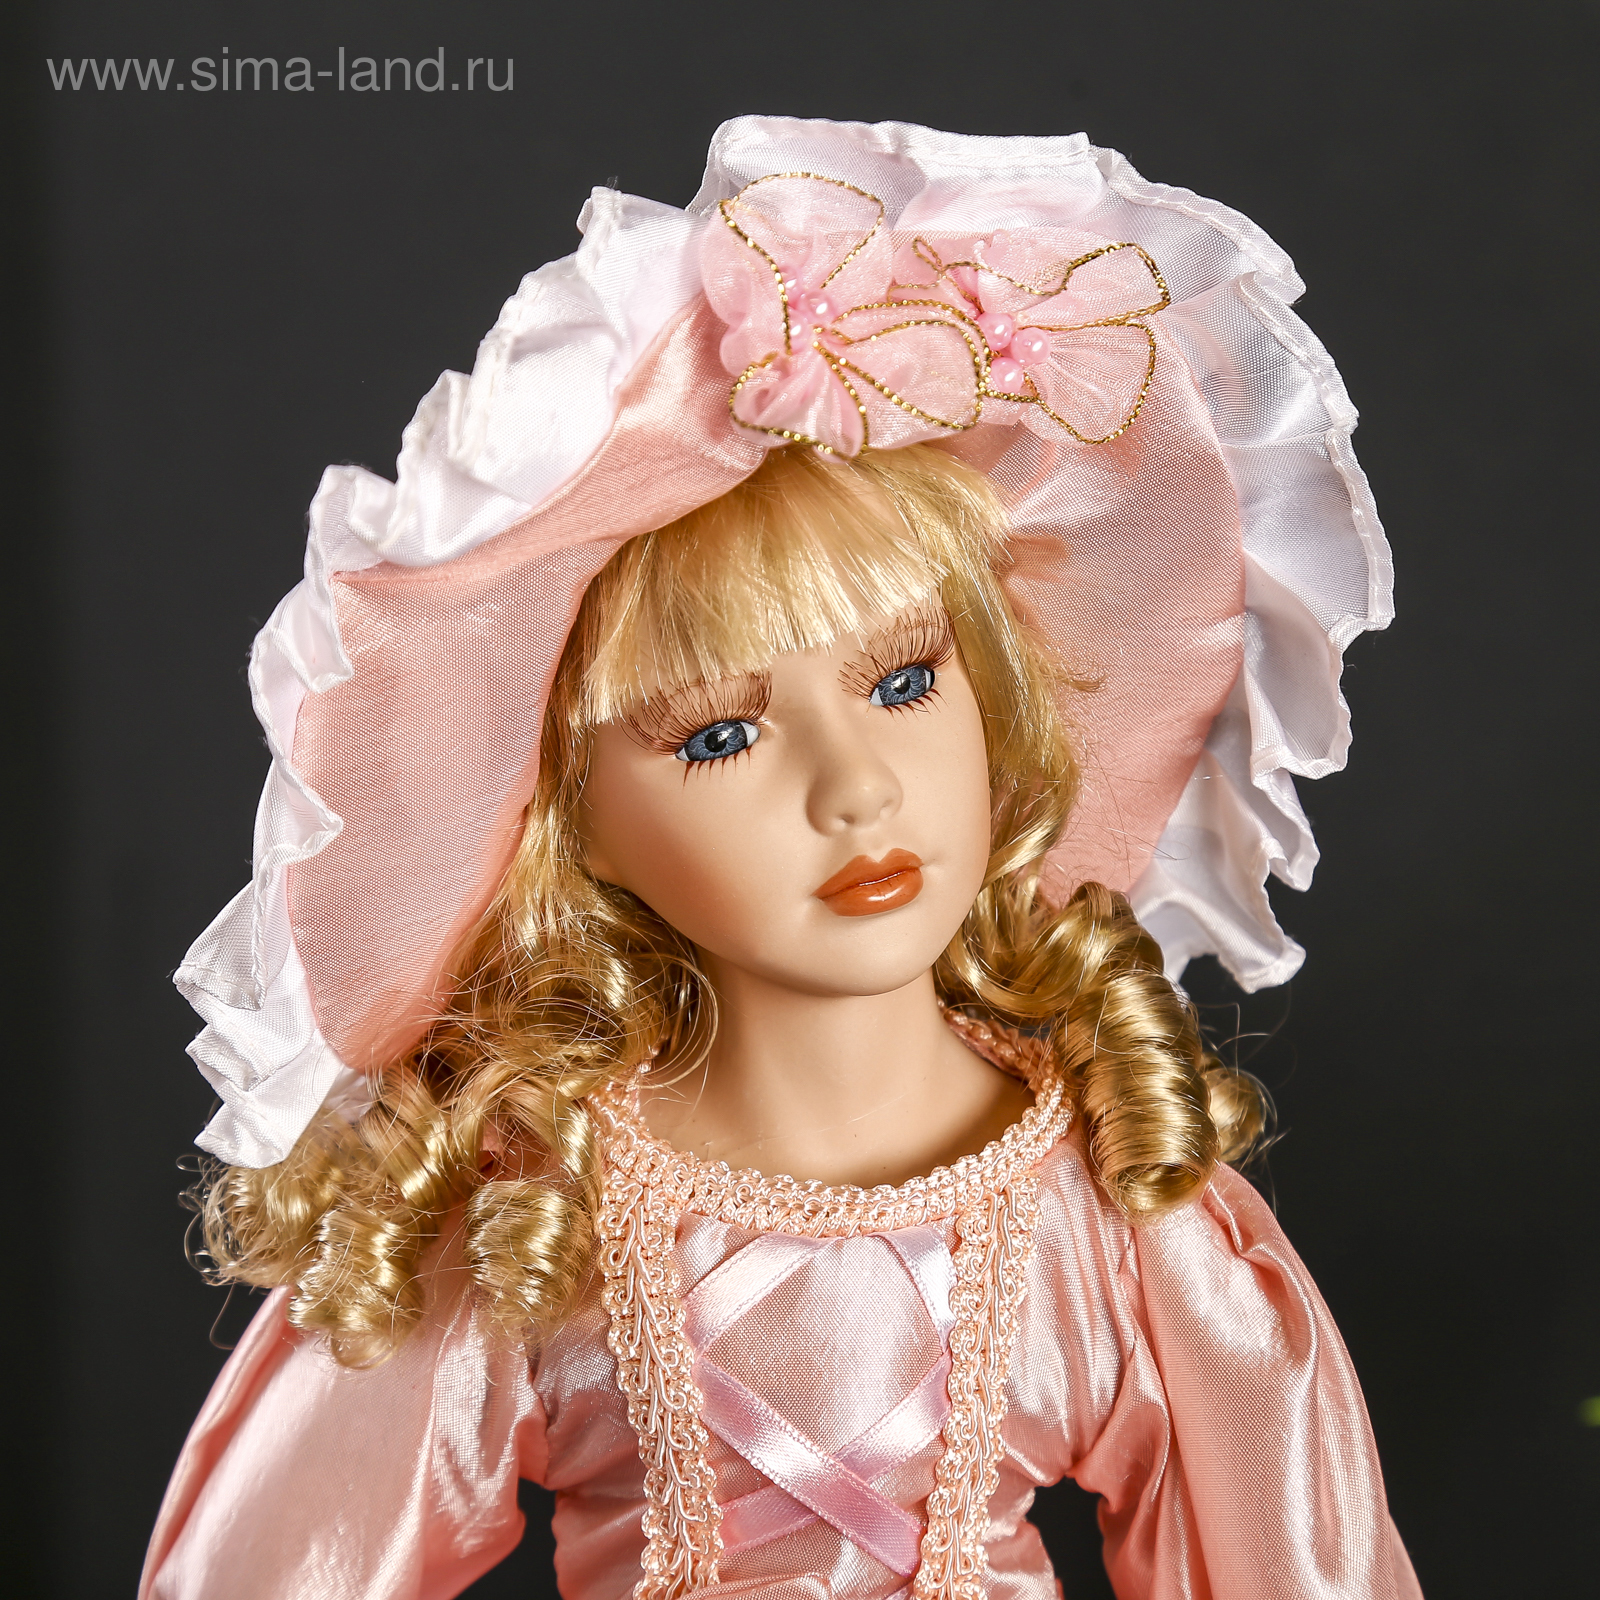 Большая куклы цена куклы. Кукла фарфоровая. Фарфоровые куклы коллекционные. Красивые фарфоровые куклы. Керамические куклы коллекционные.